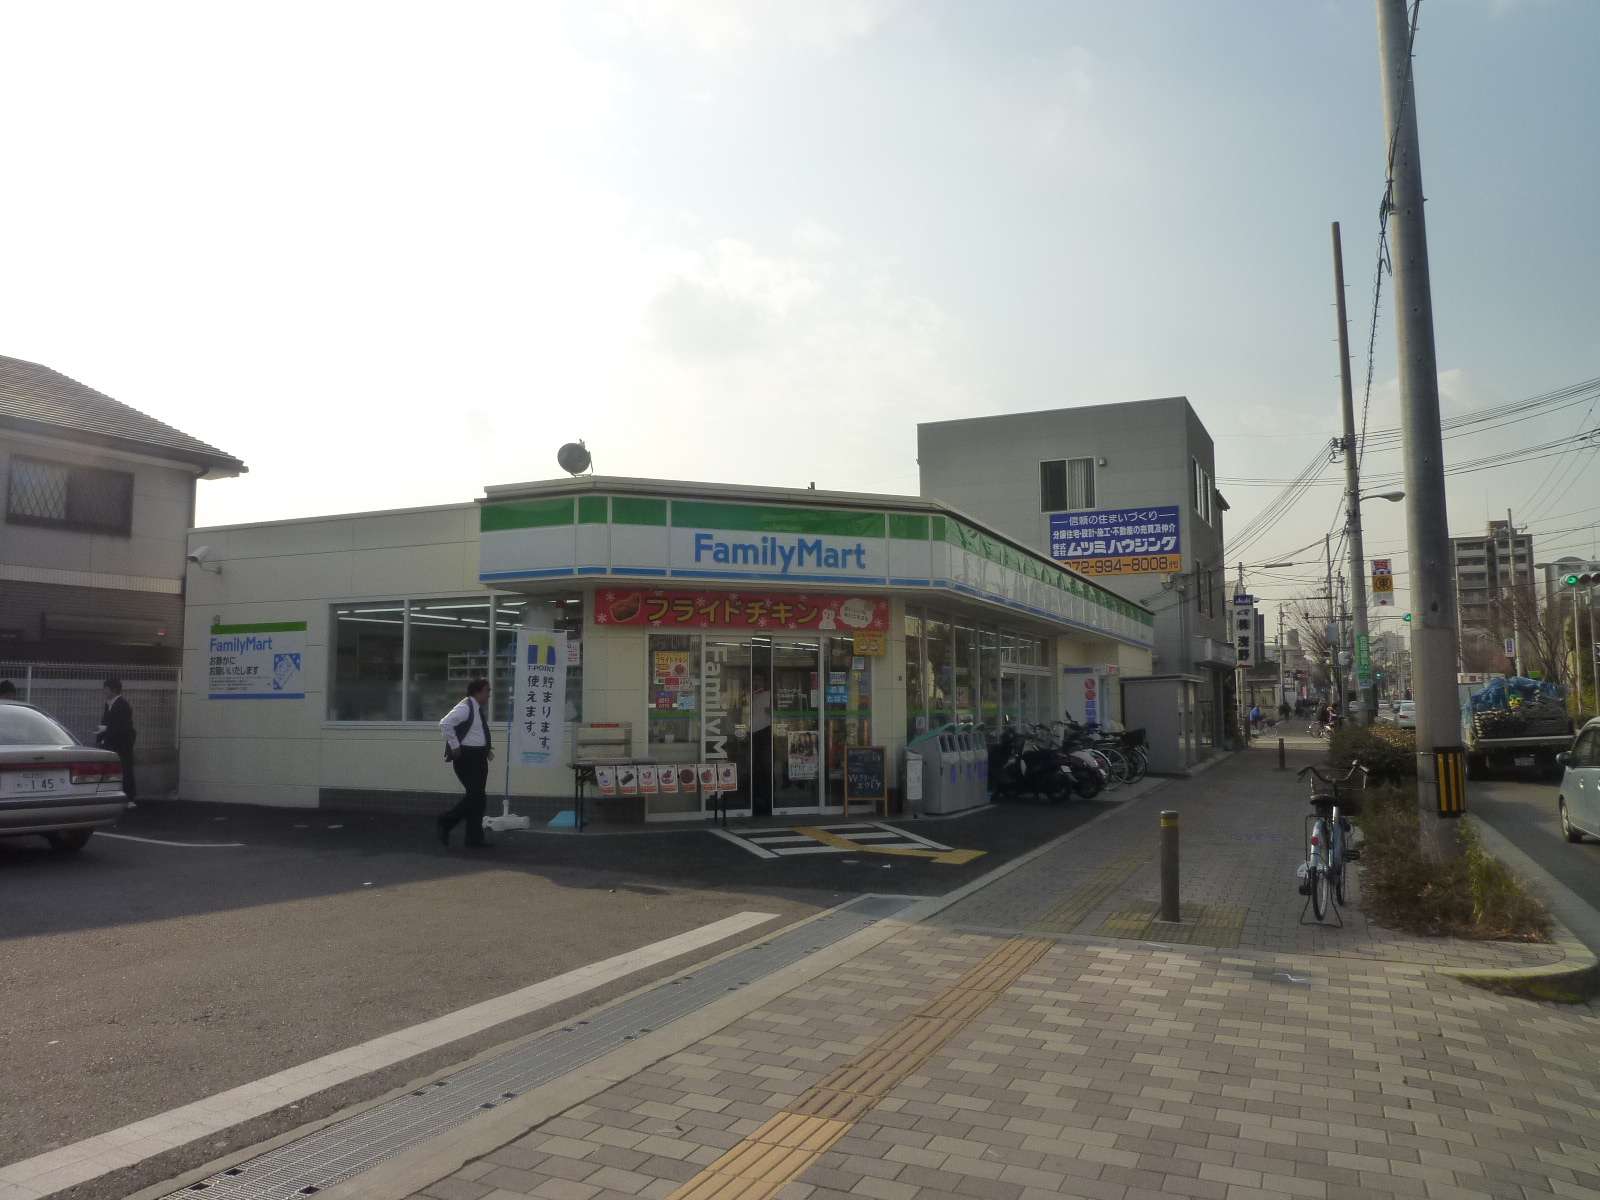 Convenience store. FamilyMart Yao Minamihon cho chome store up (convenience store) 50m